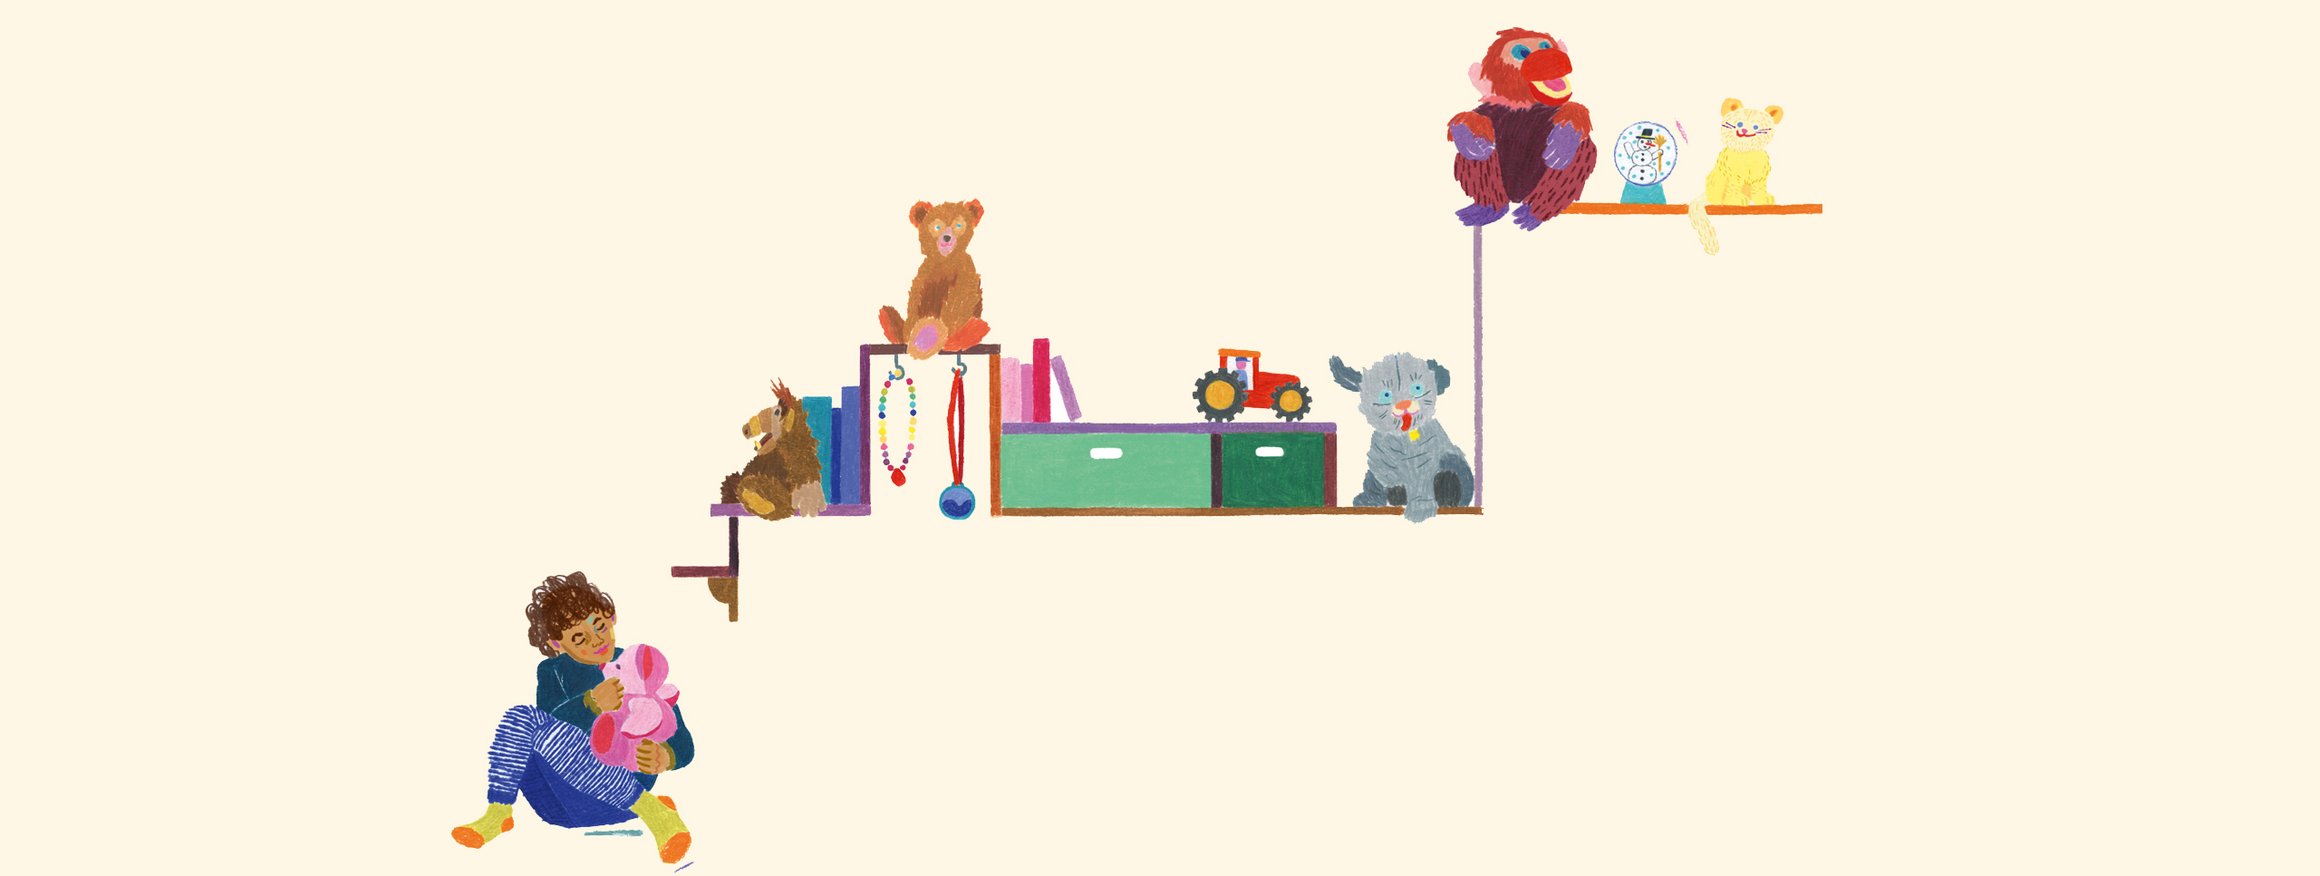 Die Illustration zeigt ein Kind mit einem rosa Teddy auf dem Arm mit dem es spielt, daneben ist ein Regal mit Spielzeug